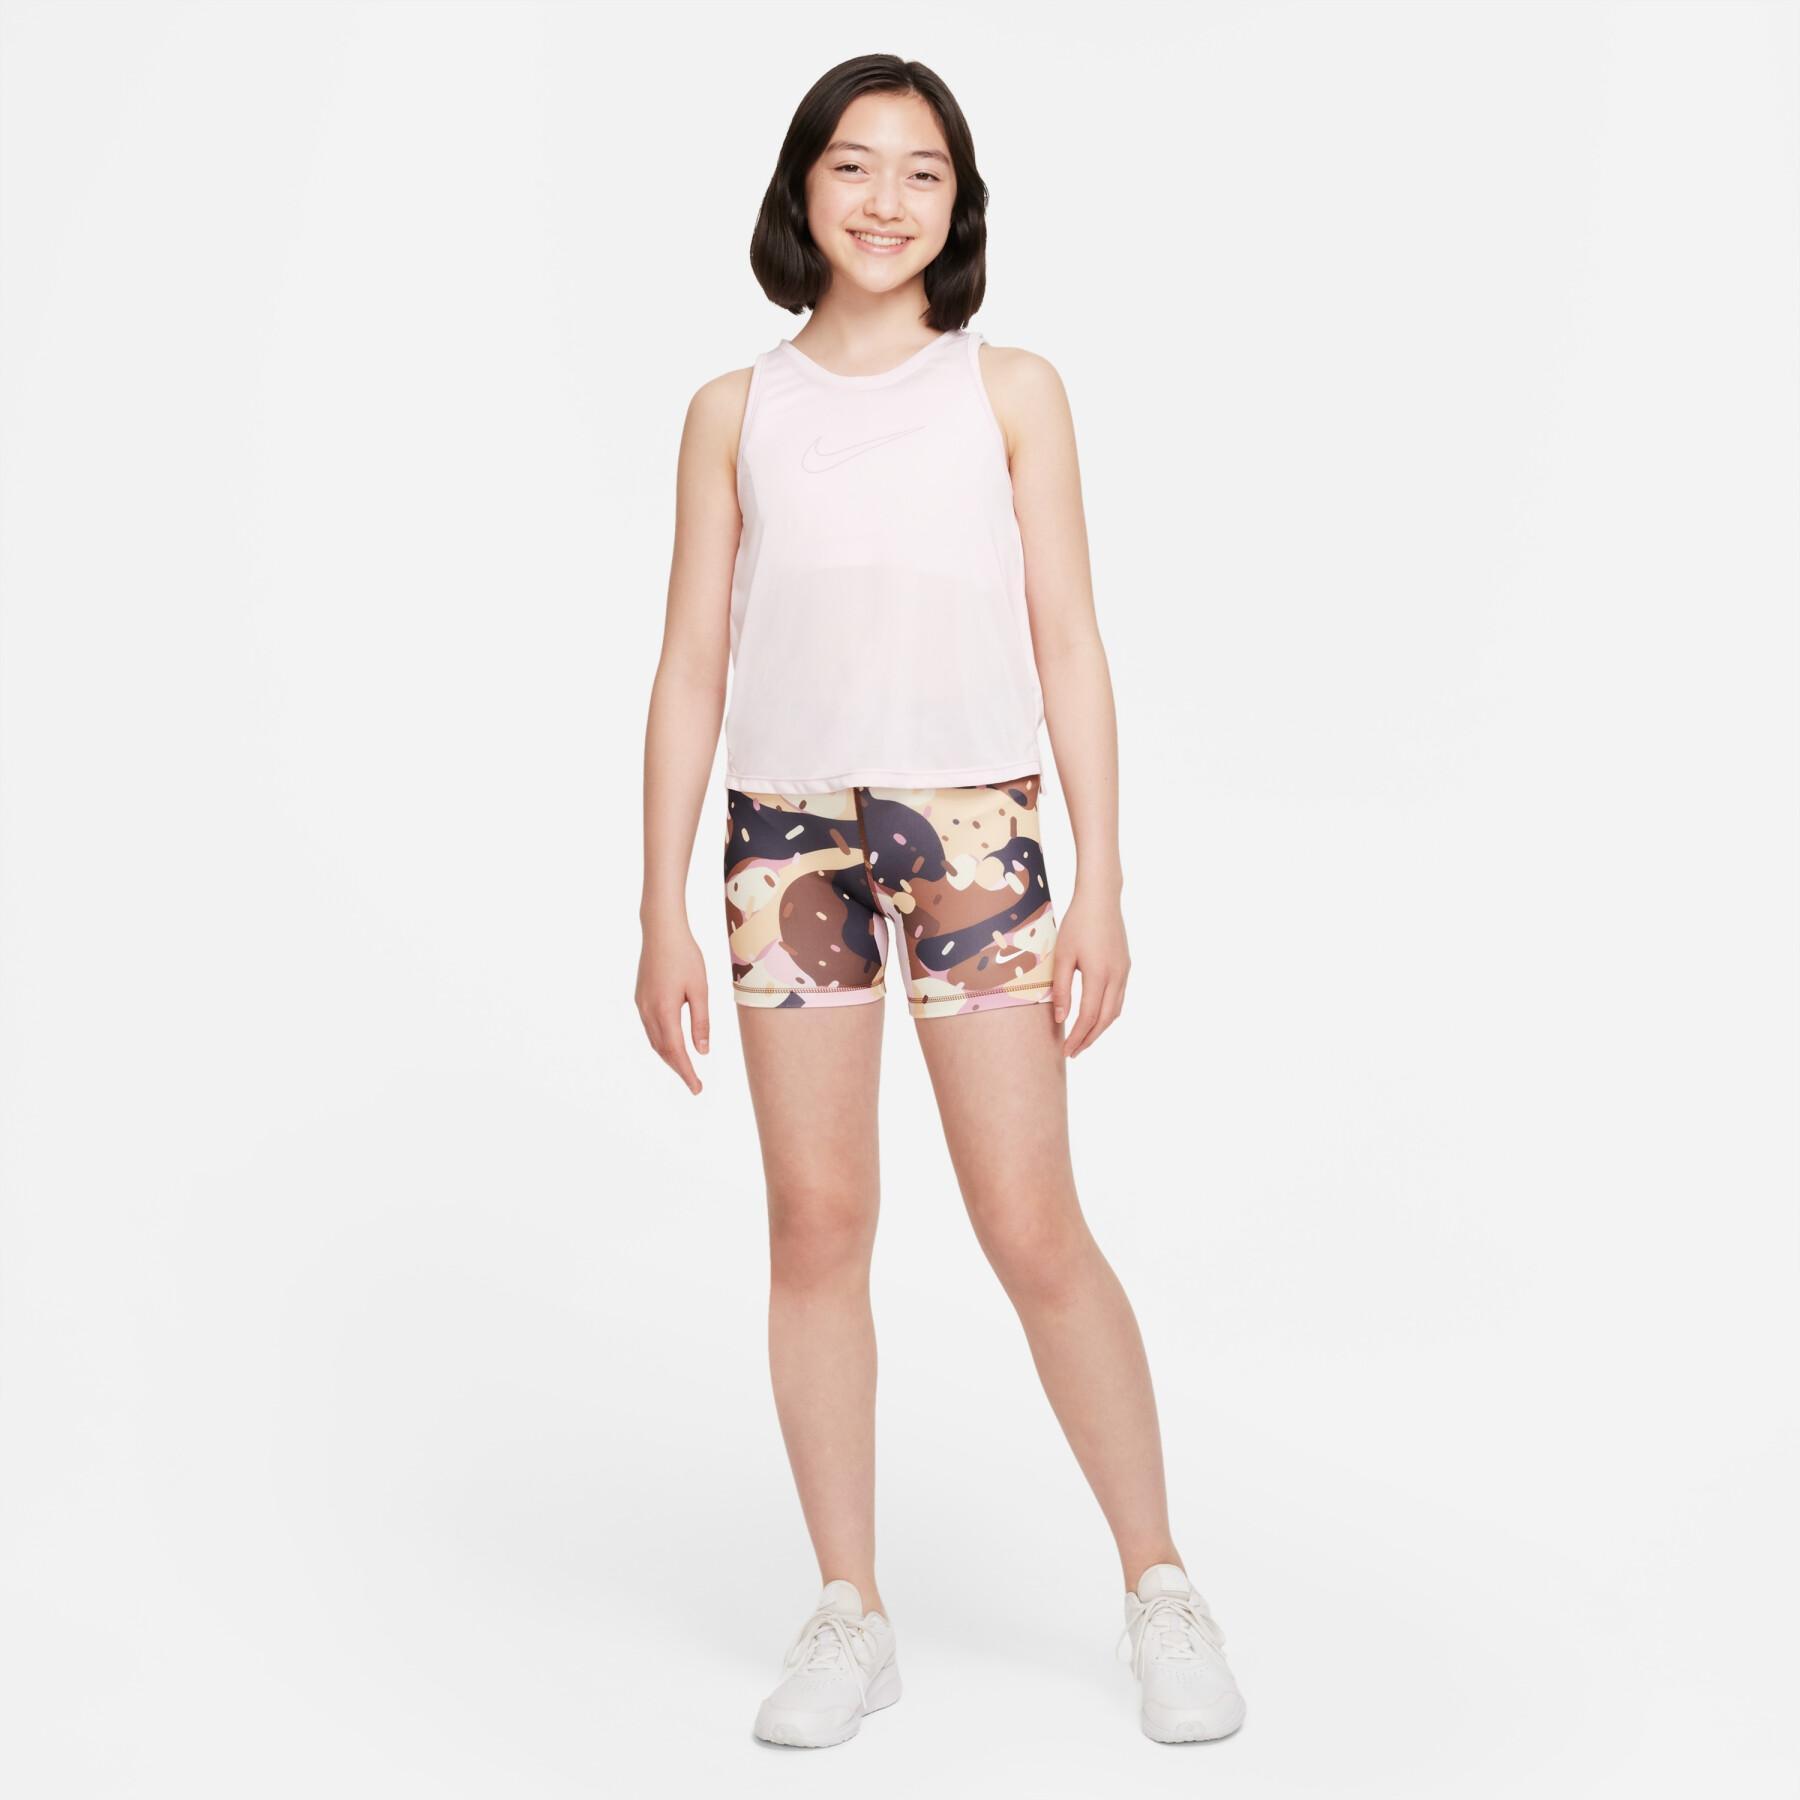 Pantalones cortos para niñas Nike Pro Dri-FIT